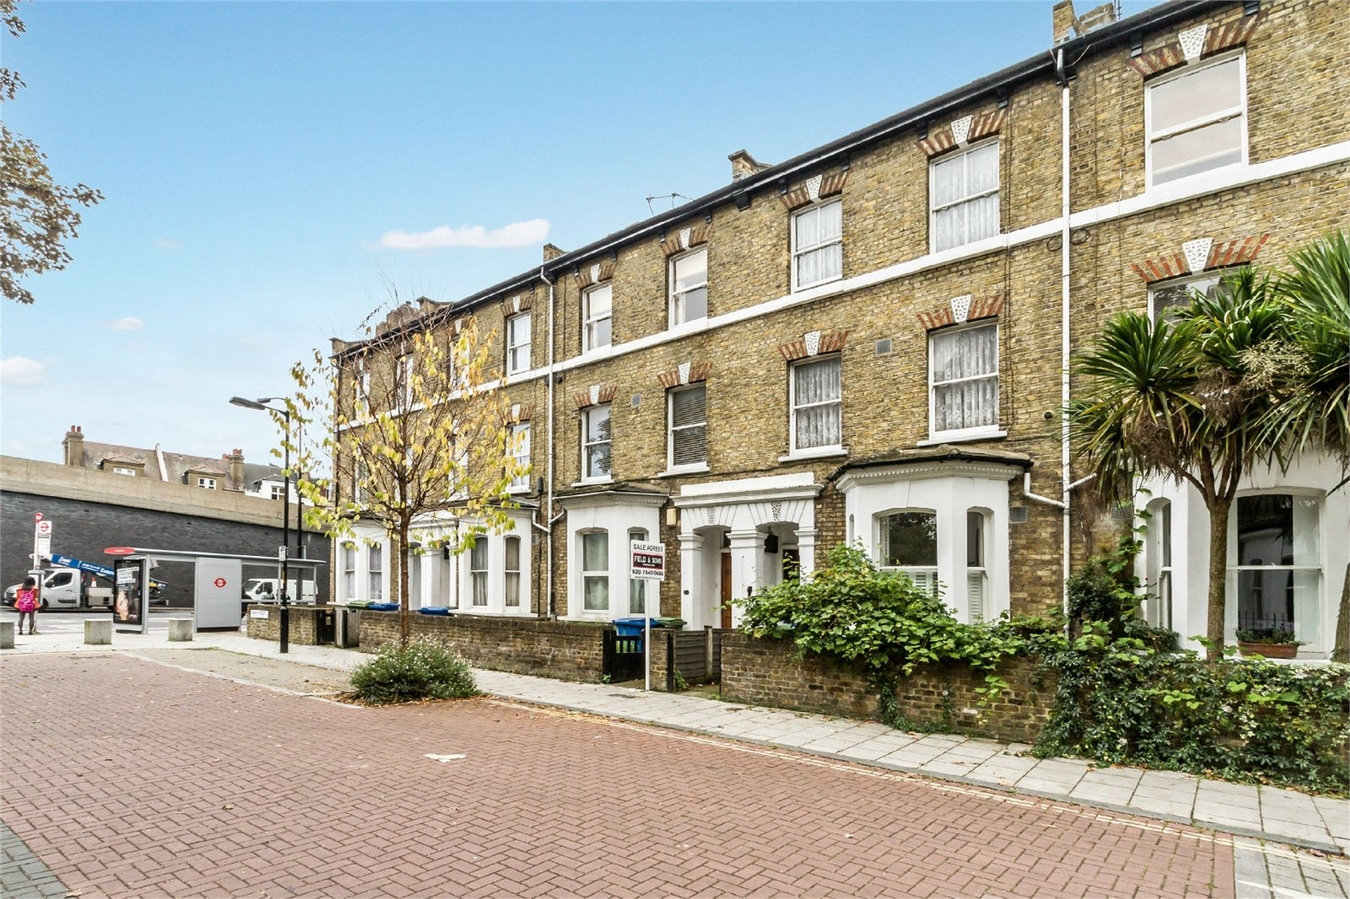 bedroom flat for sale in darwin street se17 london £ 325000 added a 